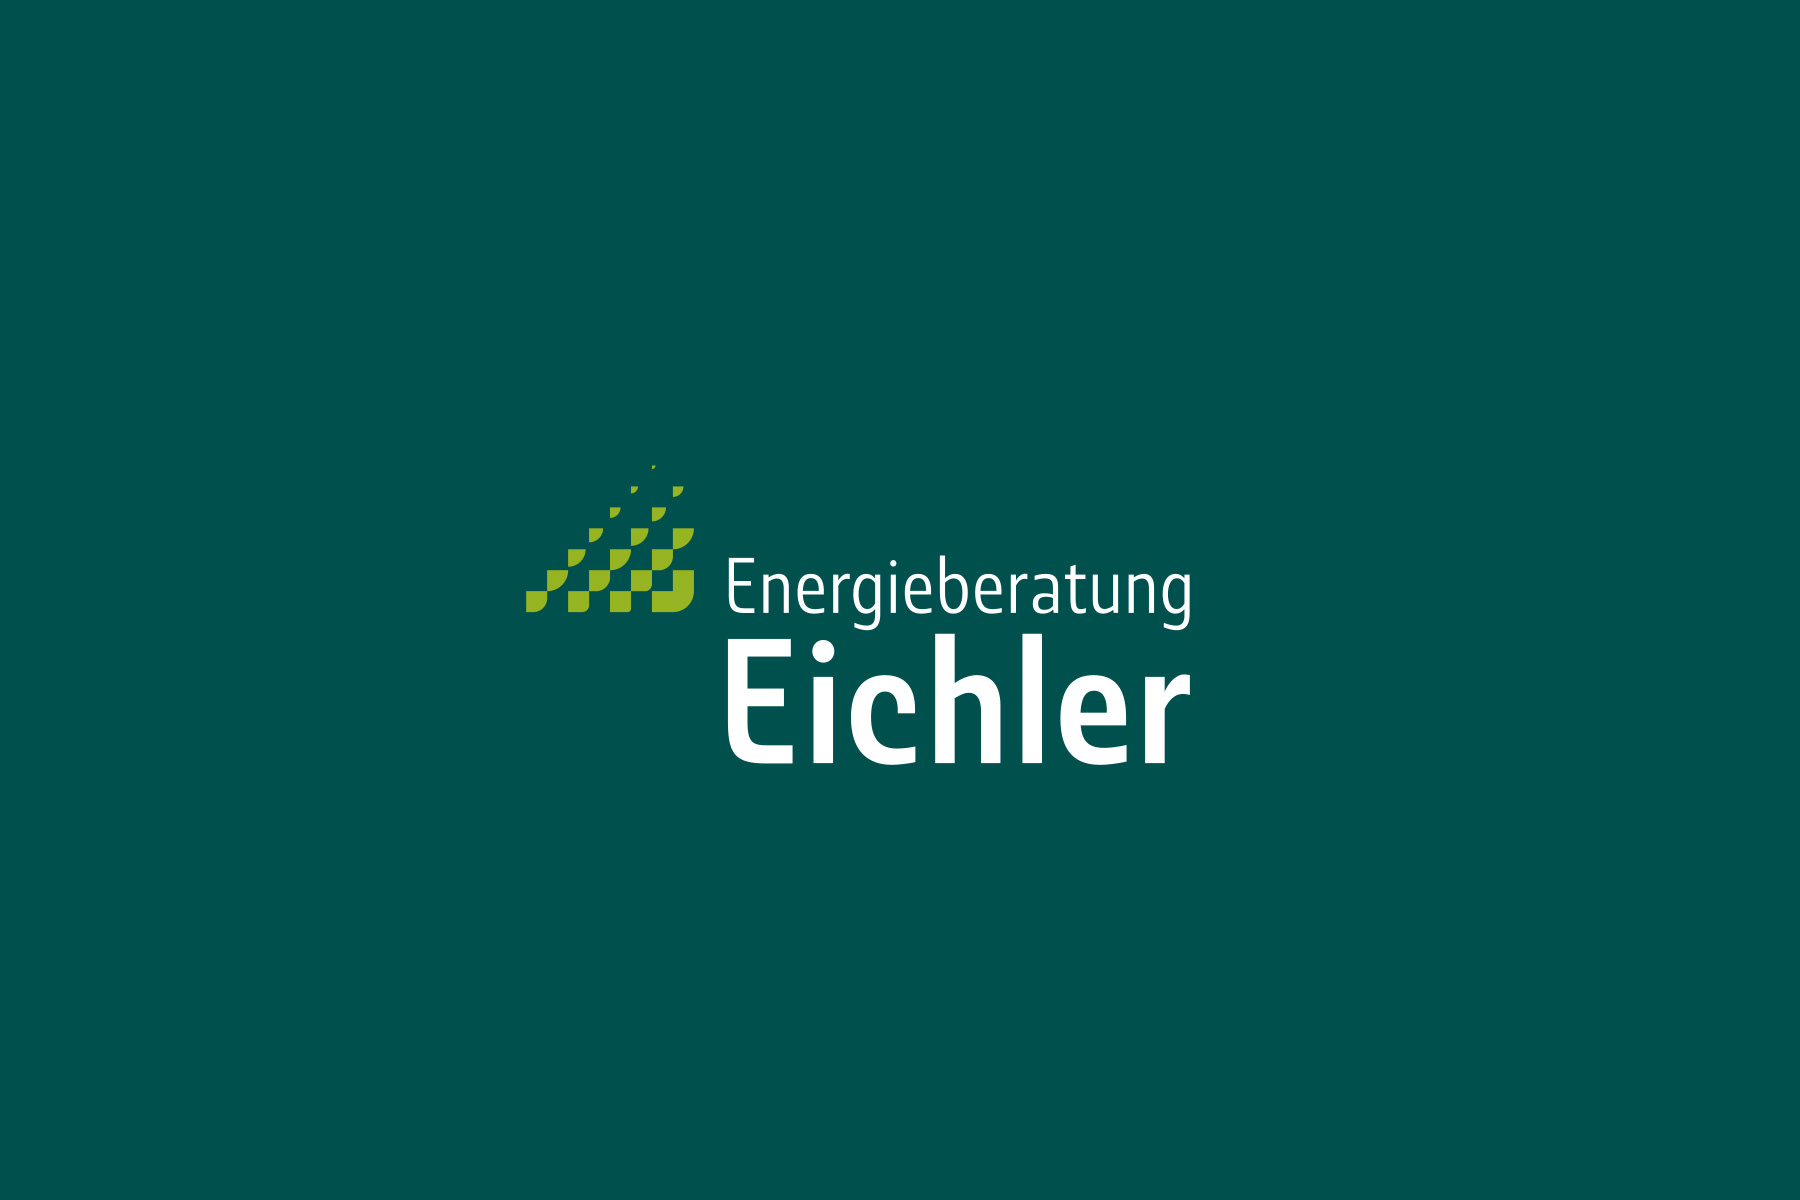 Logo und visuelles Erscheinungsbild für Energieberater, Logo mit Akzentfarbe auf dunklem Hintergrund